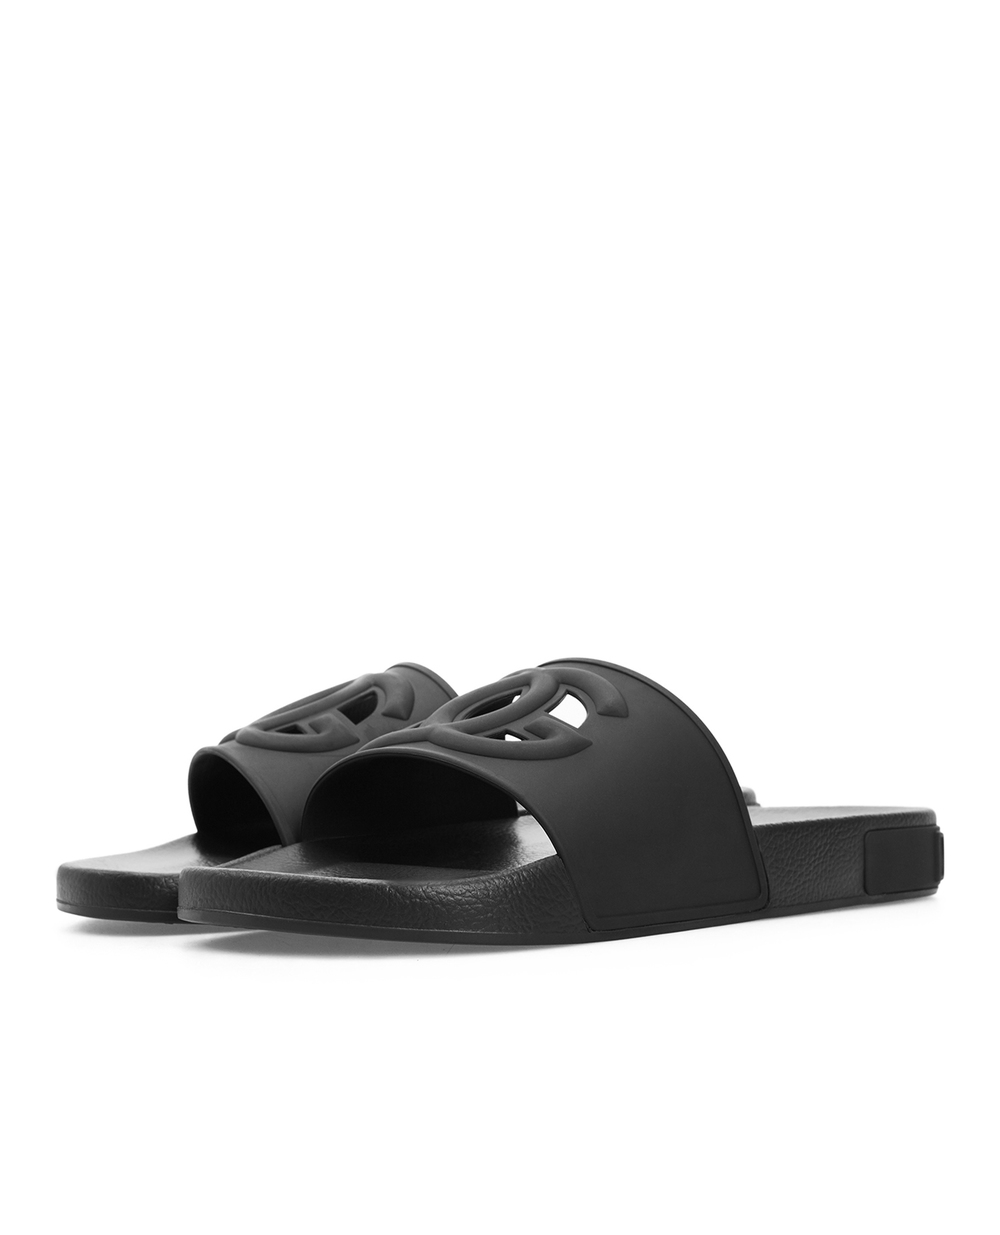 Слайдеры Dolce&Gabbana CS1886-AO666, черный цвет • Купить в интернет-магазине Kameron